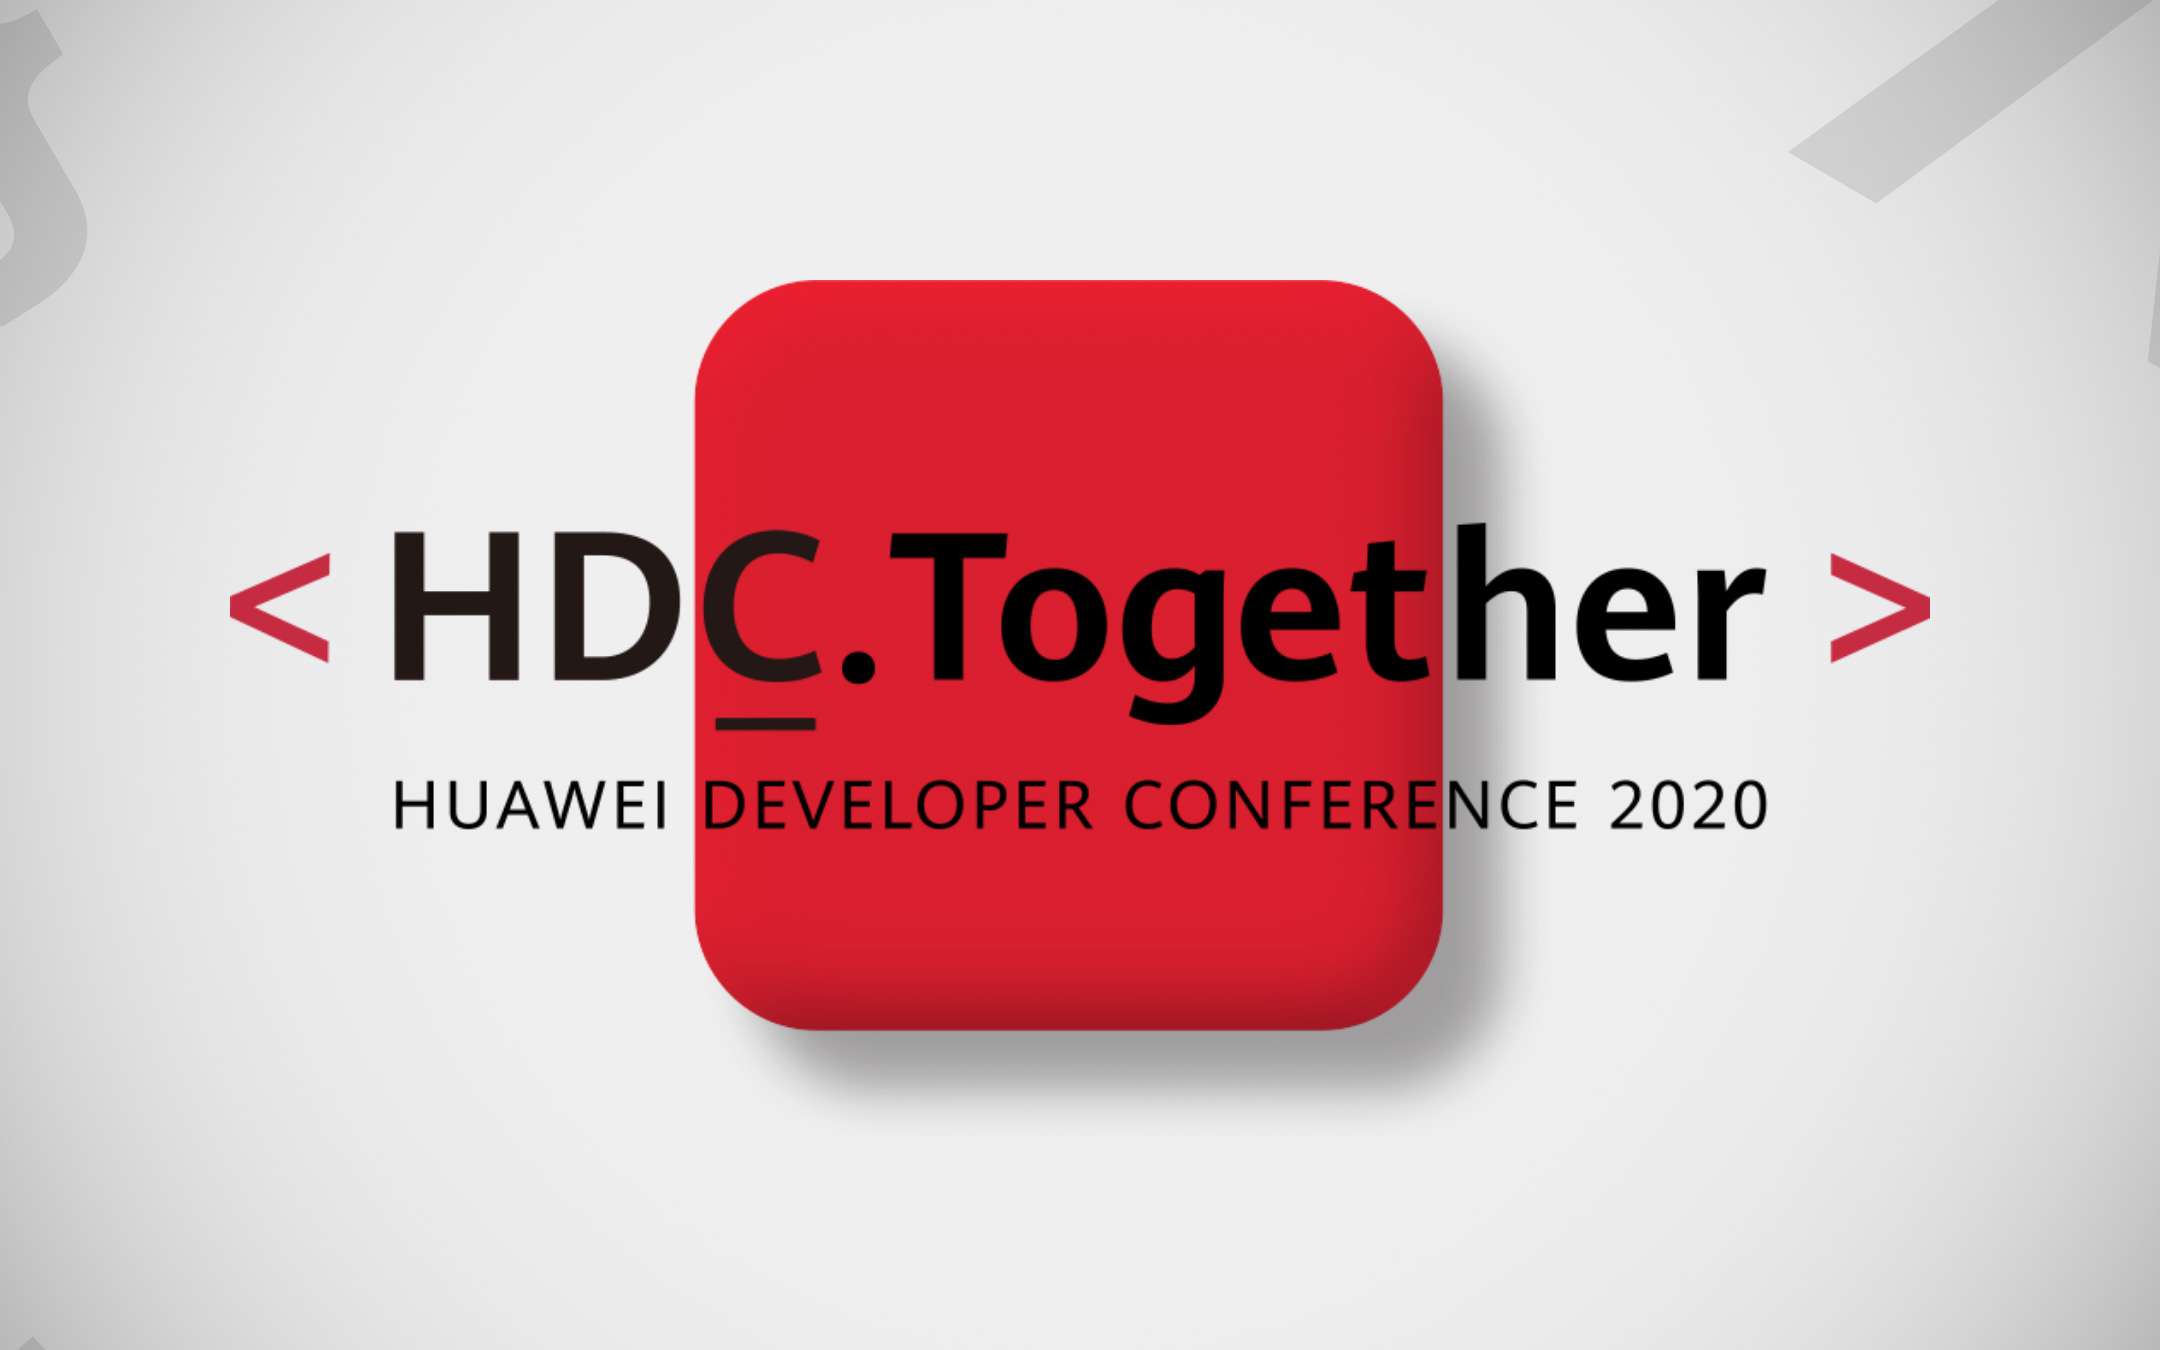 Huawei Developer Conference 2020, 10-12 September